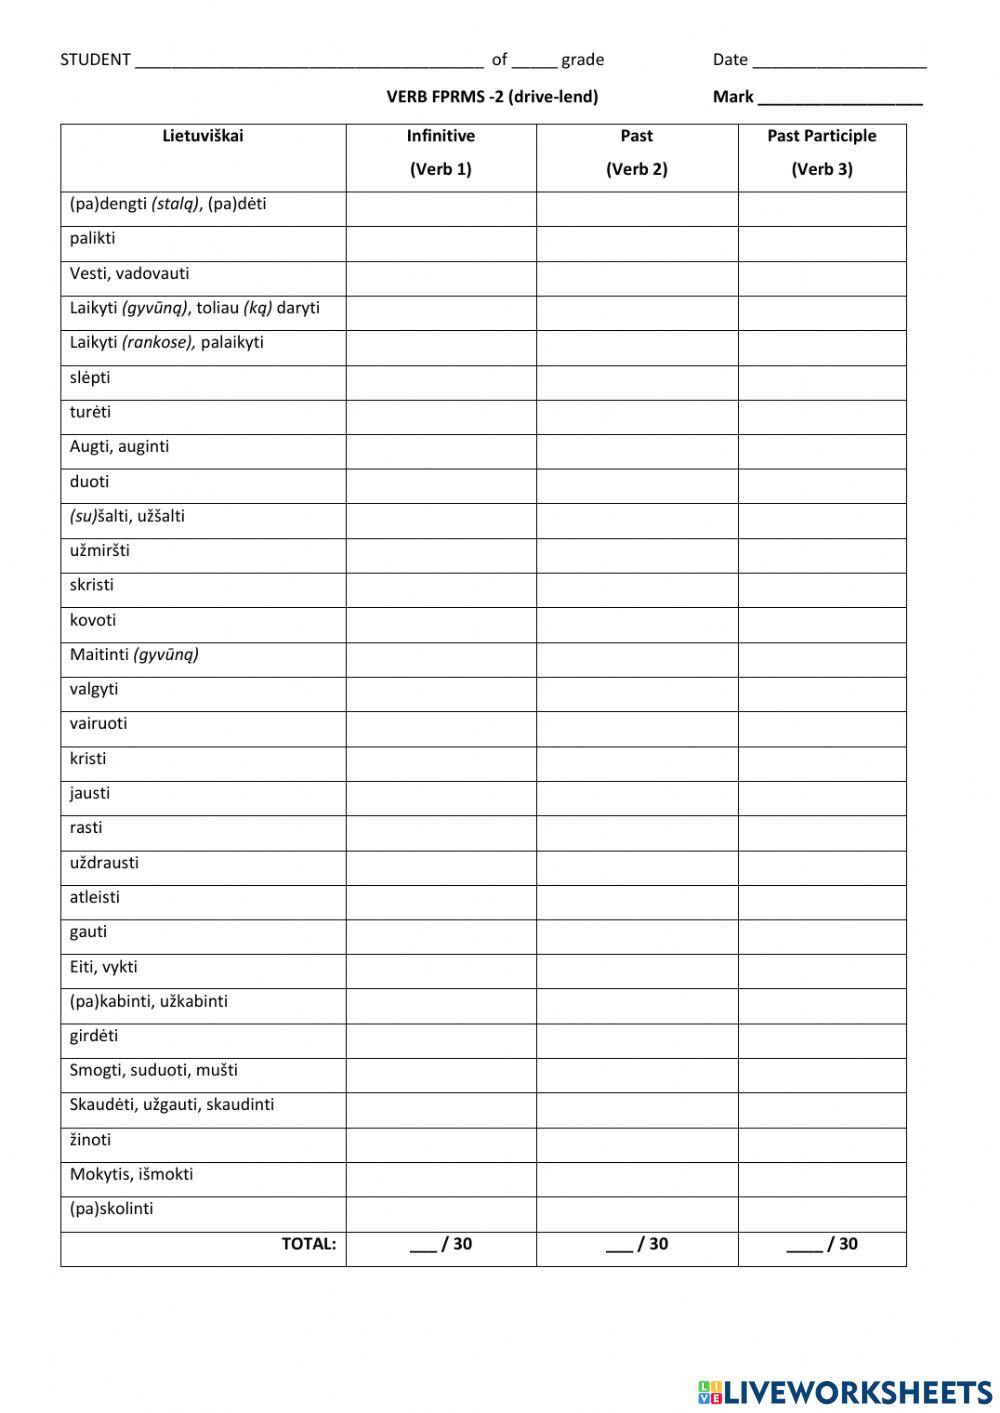 Verb forms (part 2: drive-lend) worksheet | Live Worksheets